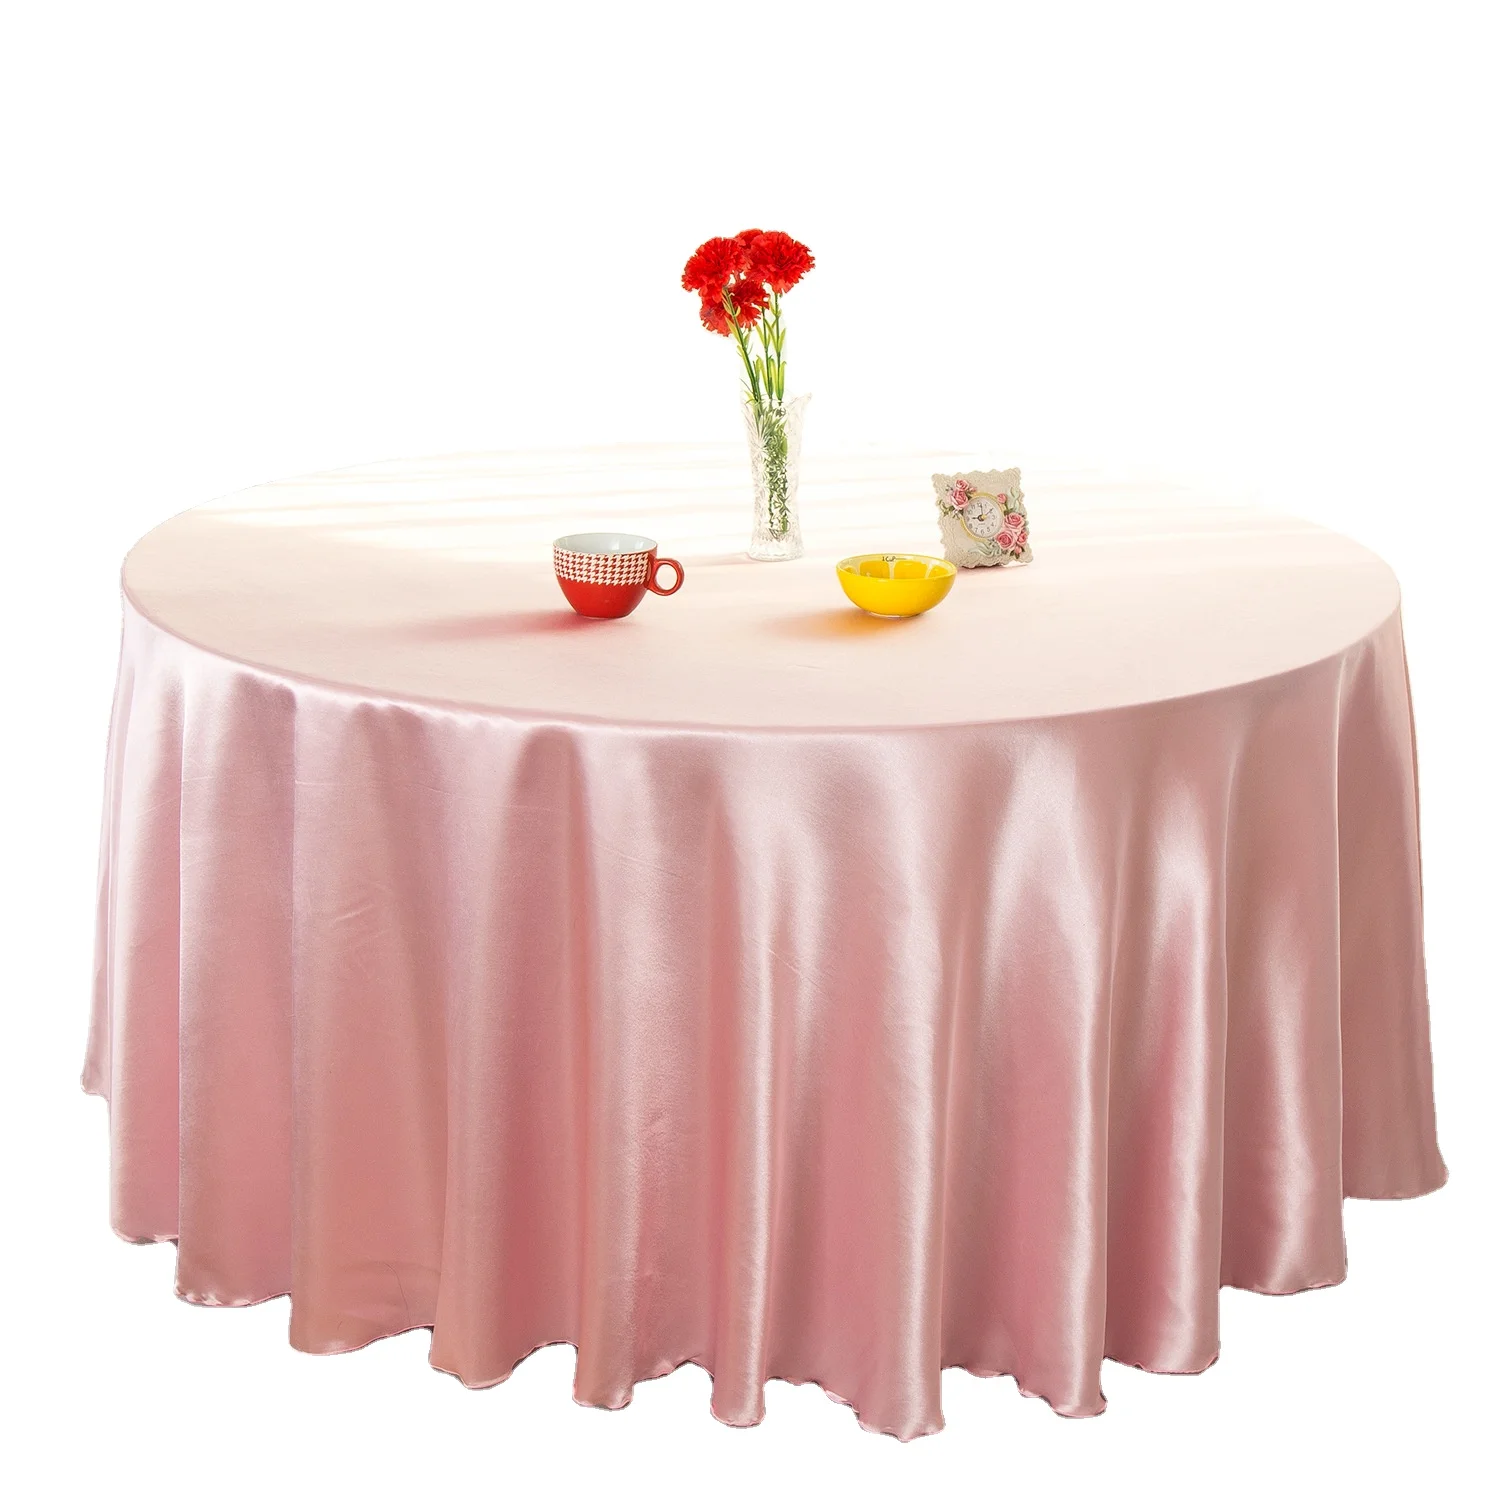 Сервировка на нежно-розовые скатерти